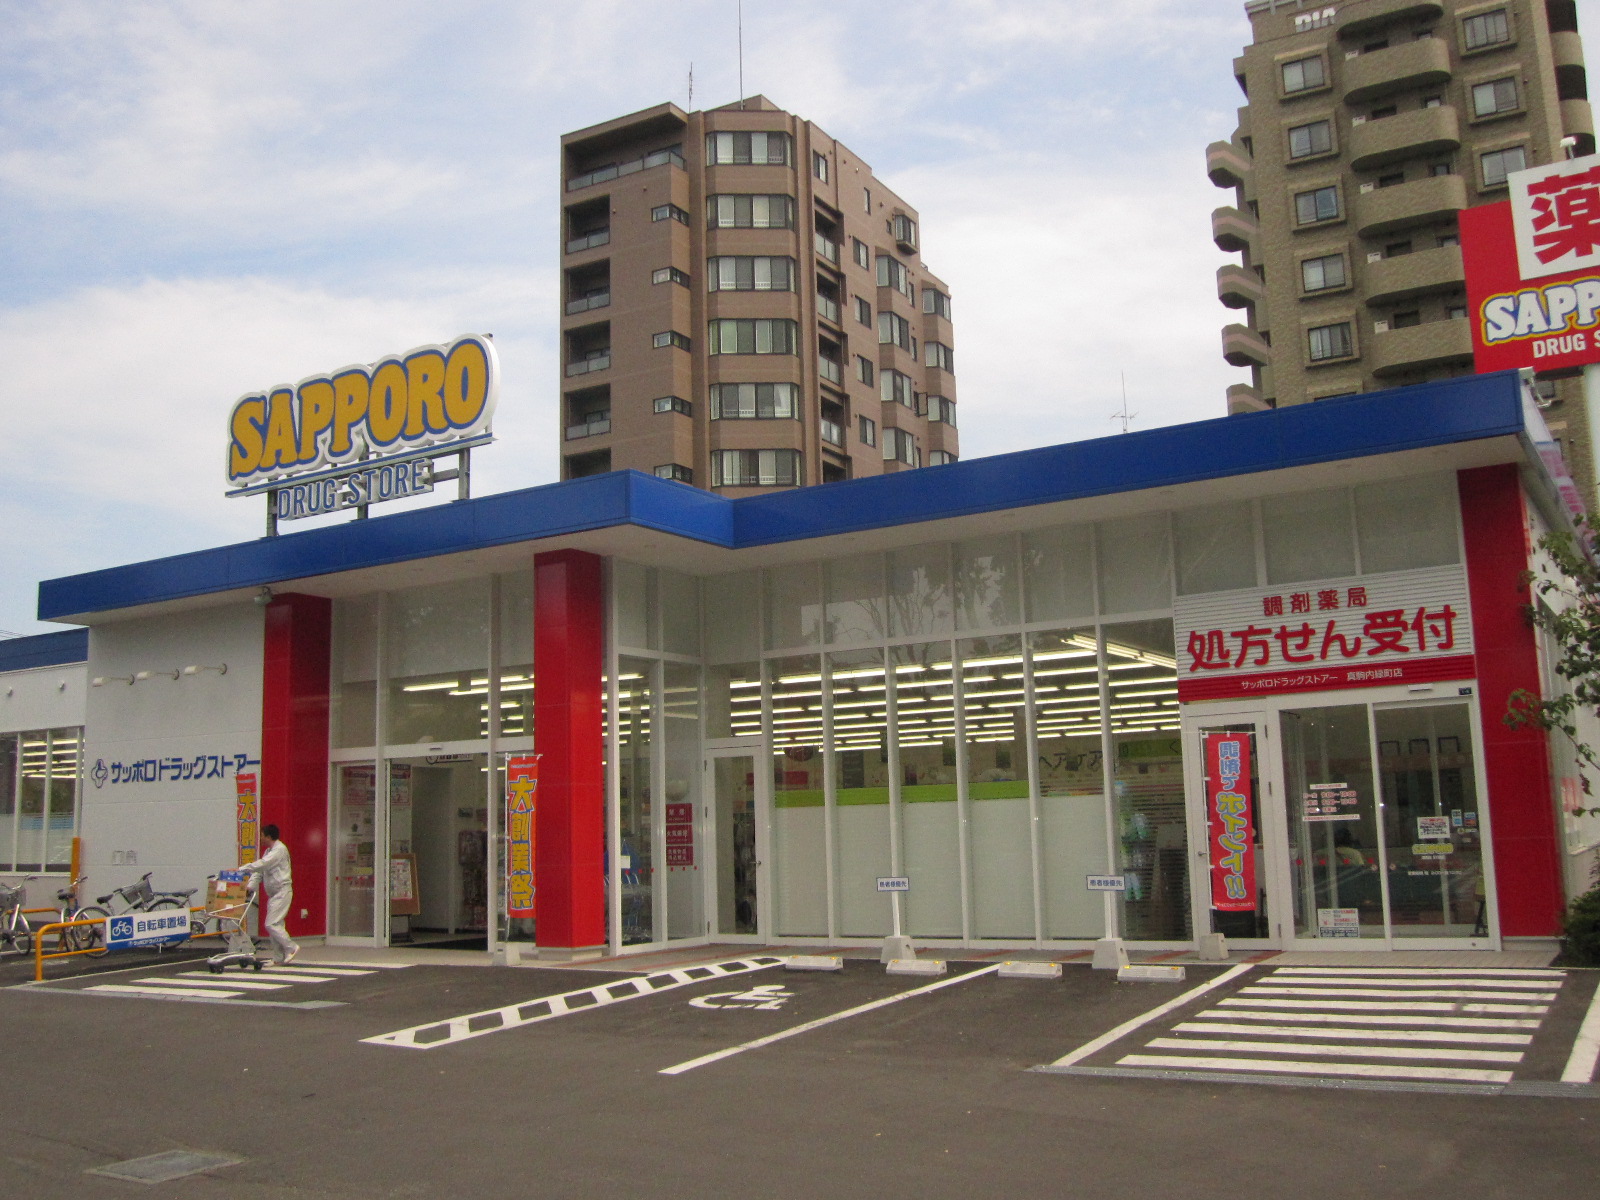 Dorakkusutoa. Sapporo drugstores Makomanaimidori cho shop 299m until (drugstore)